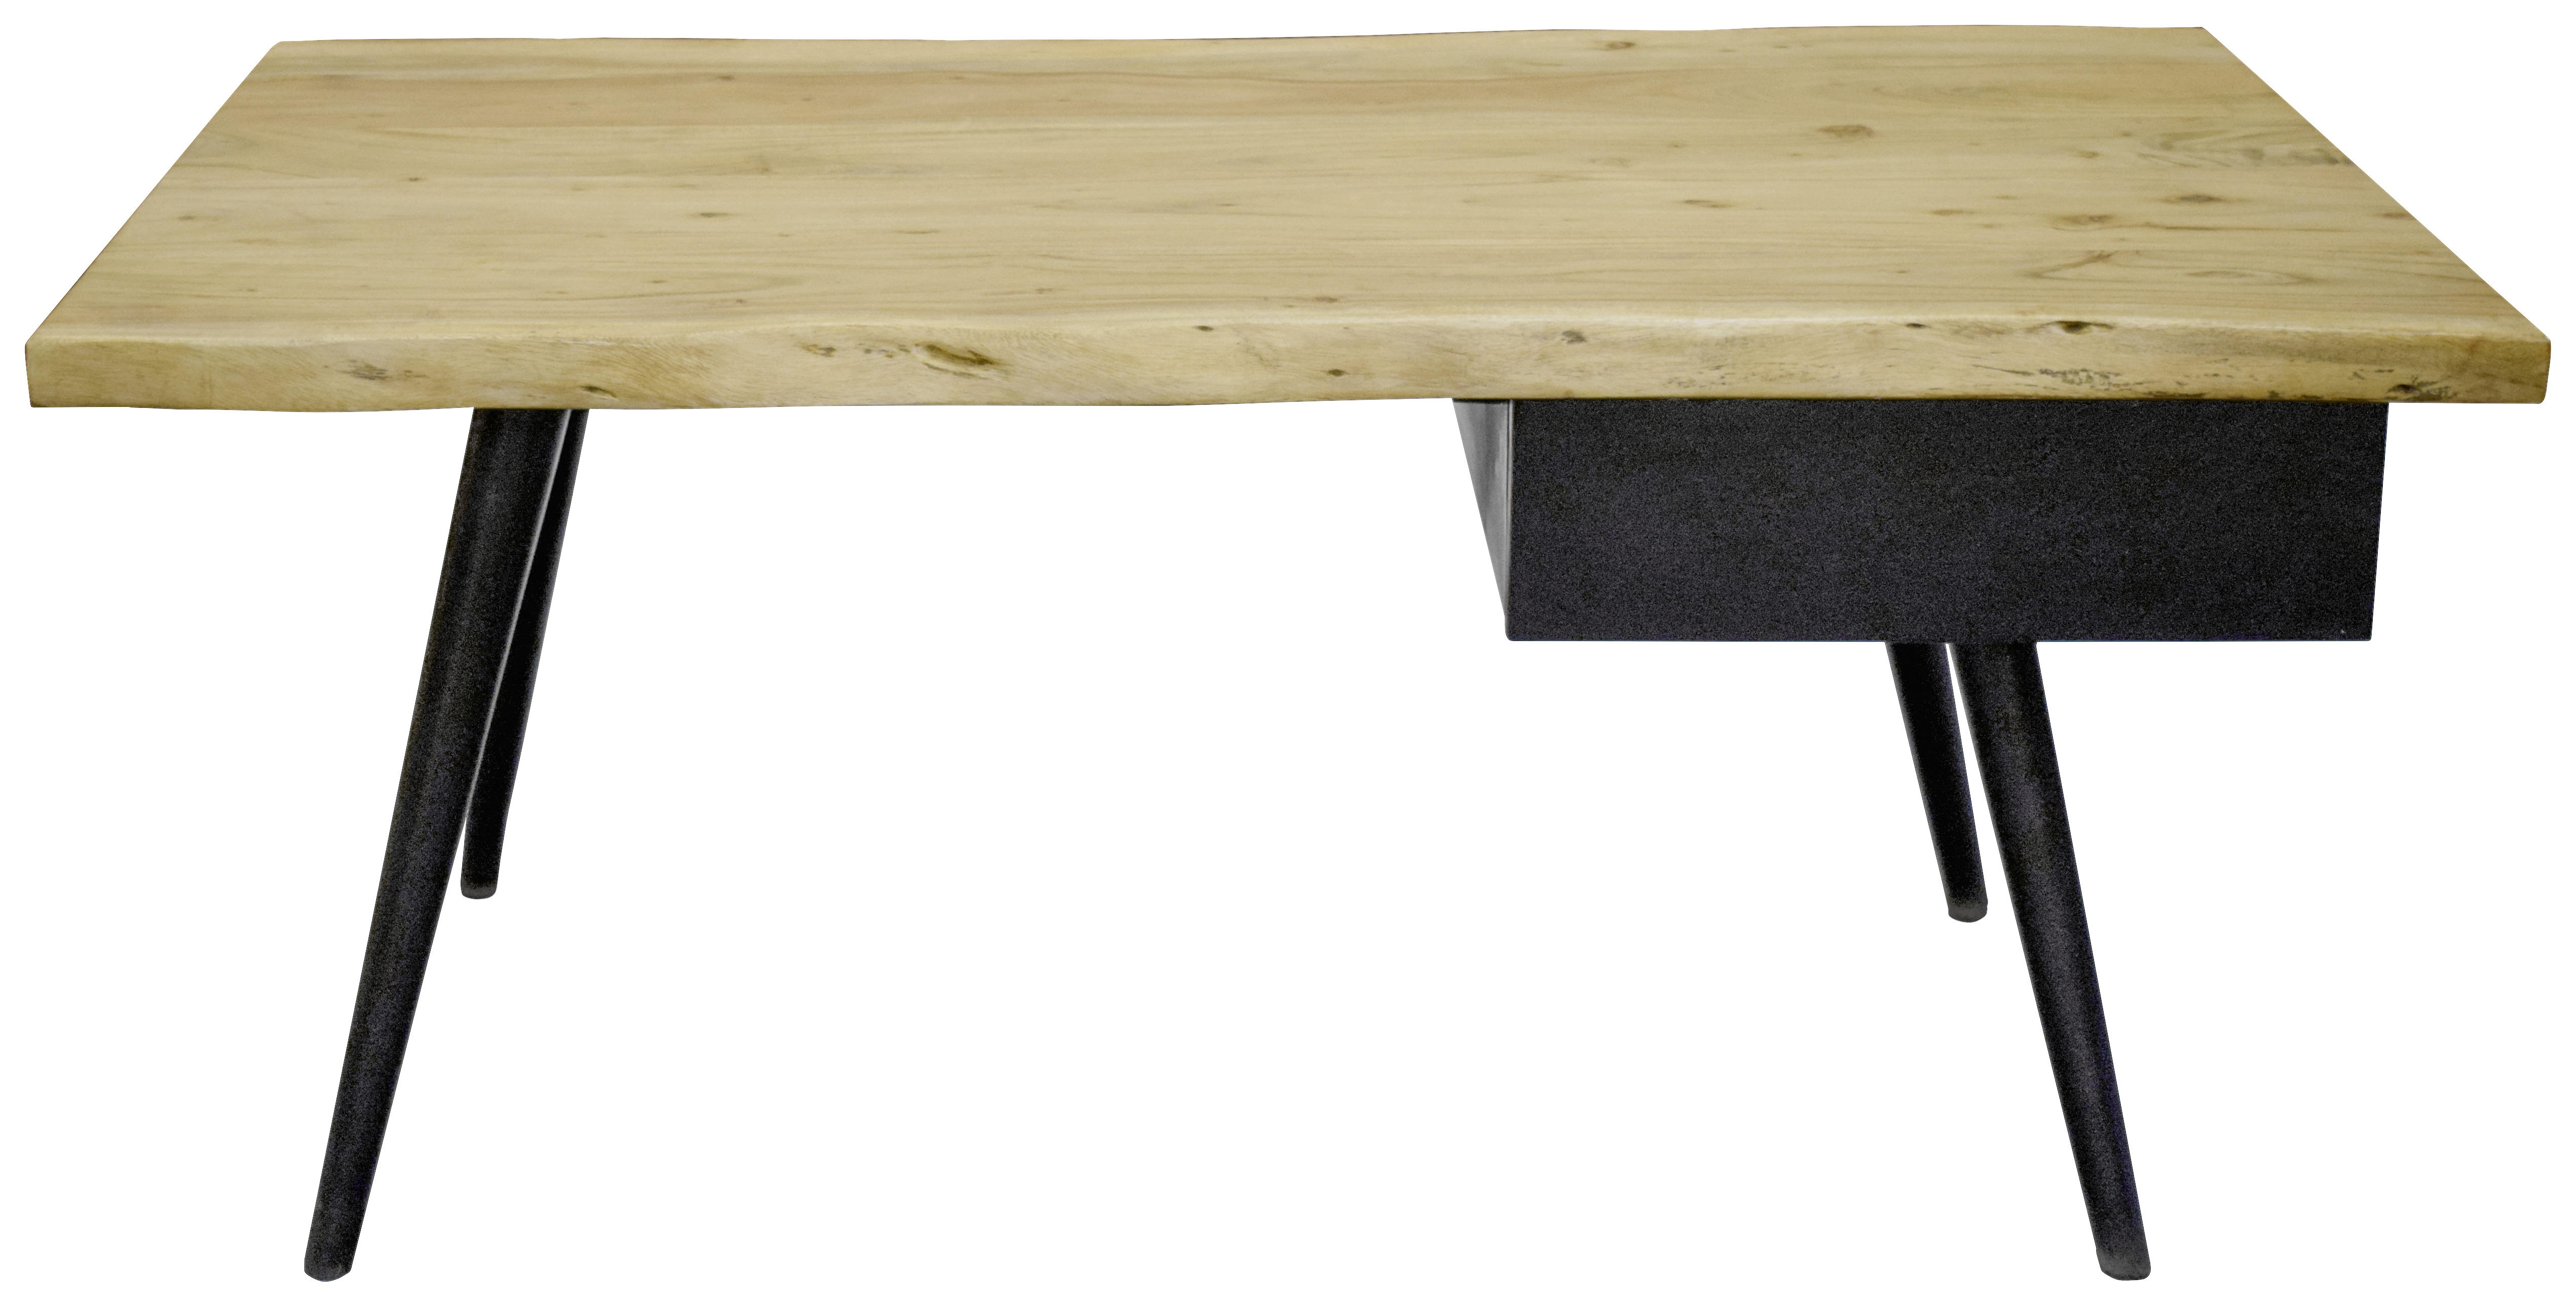 COUCHTISCH Akazie massiv rechteckig Schwarz, Akaziefarben 115/70/45 cm  - Schwarz/Akaziefarben, Design, Holz/Metall (115/70/45cm) - Carryhome